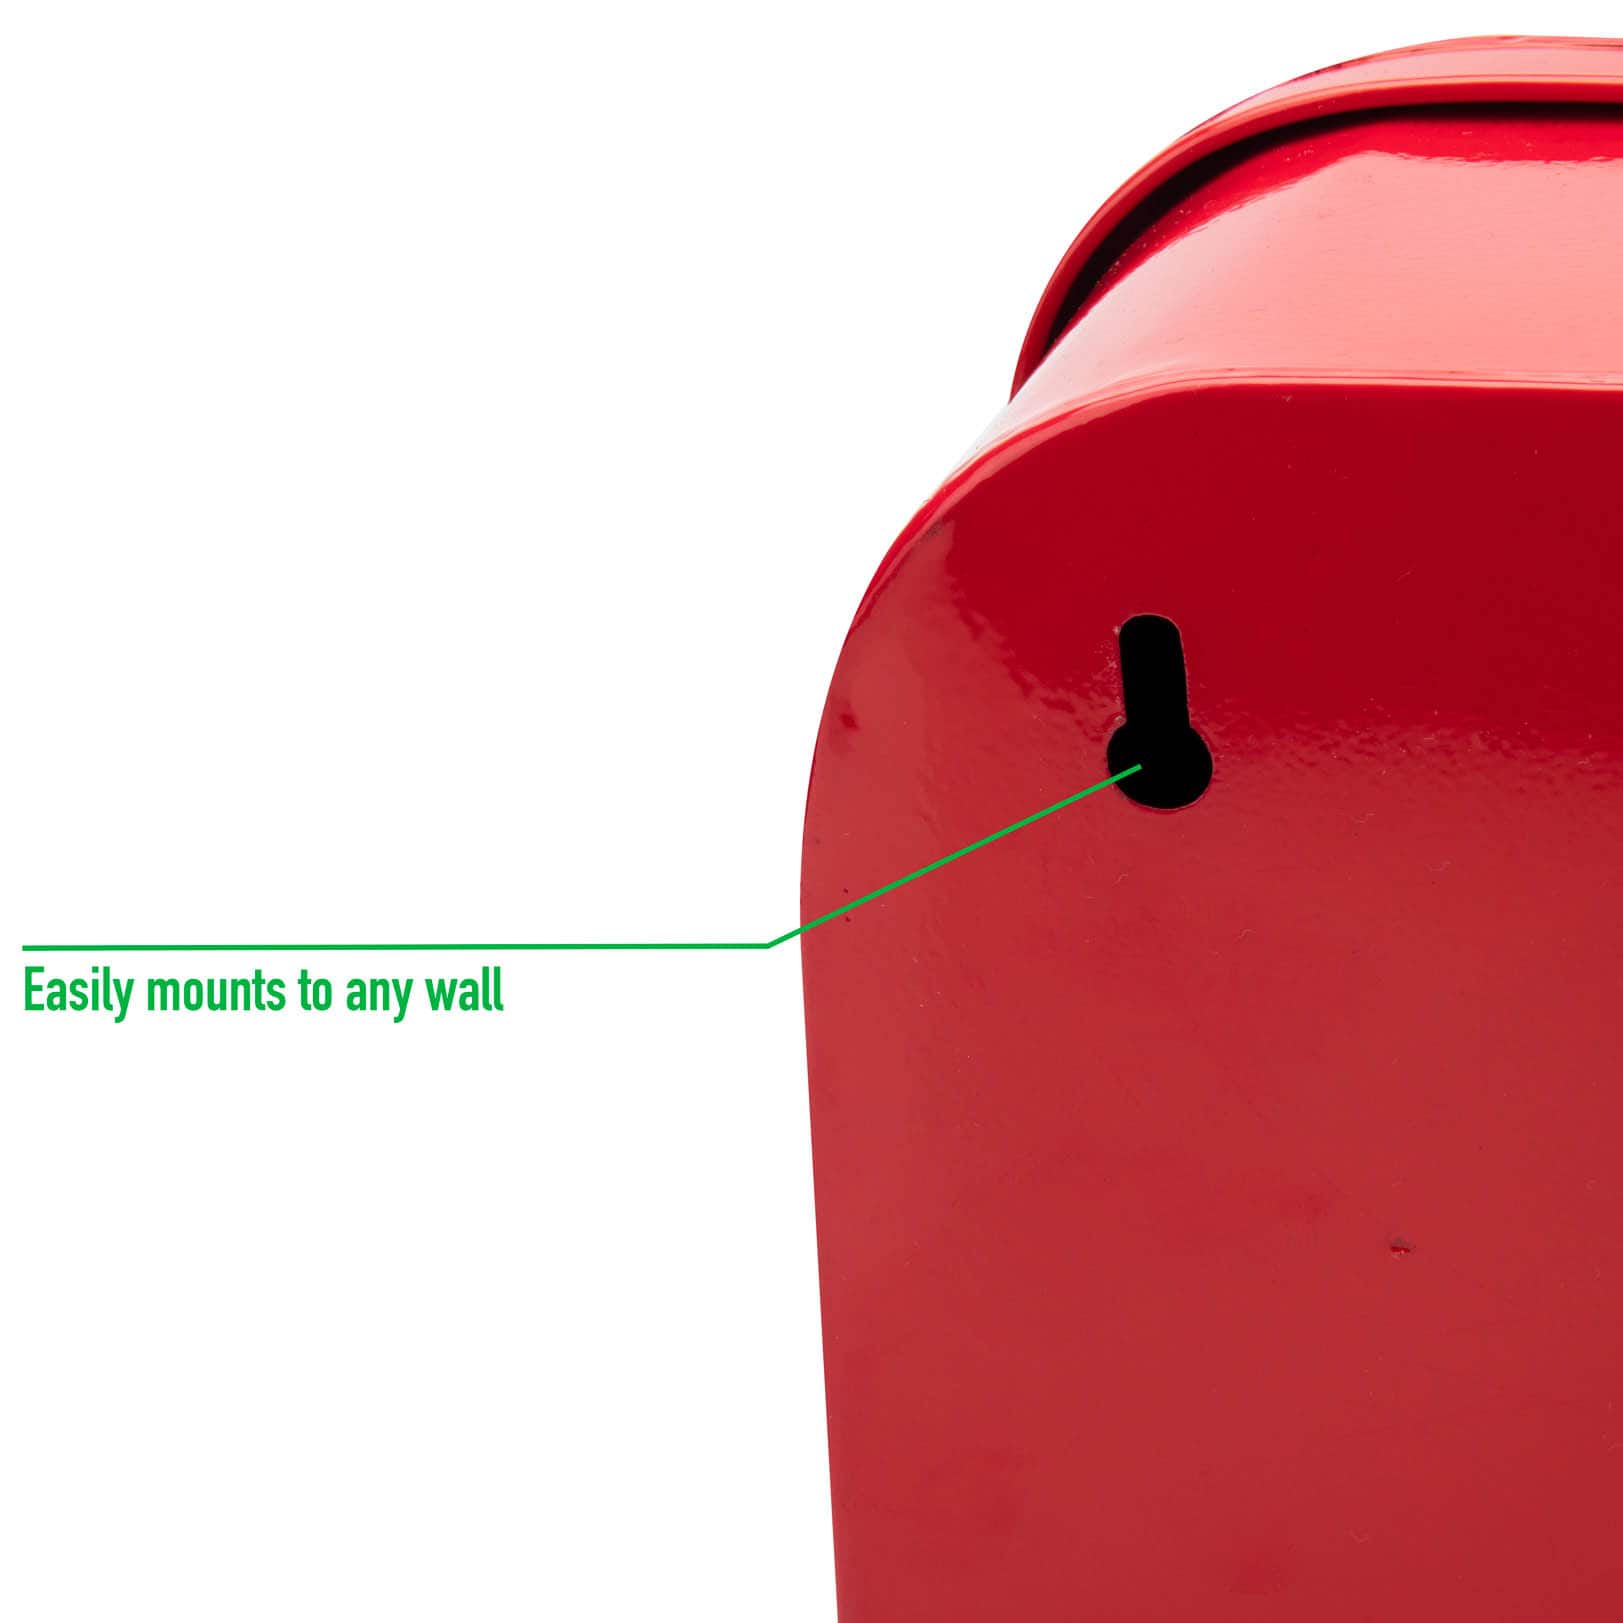 Mind Reader Galvanized First Aid Storage Box - Red